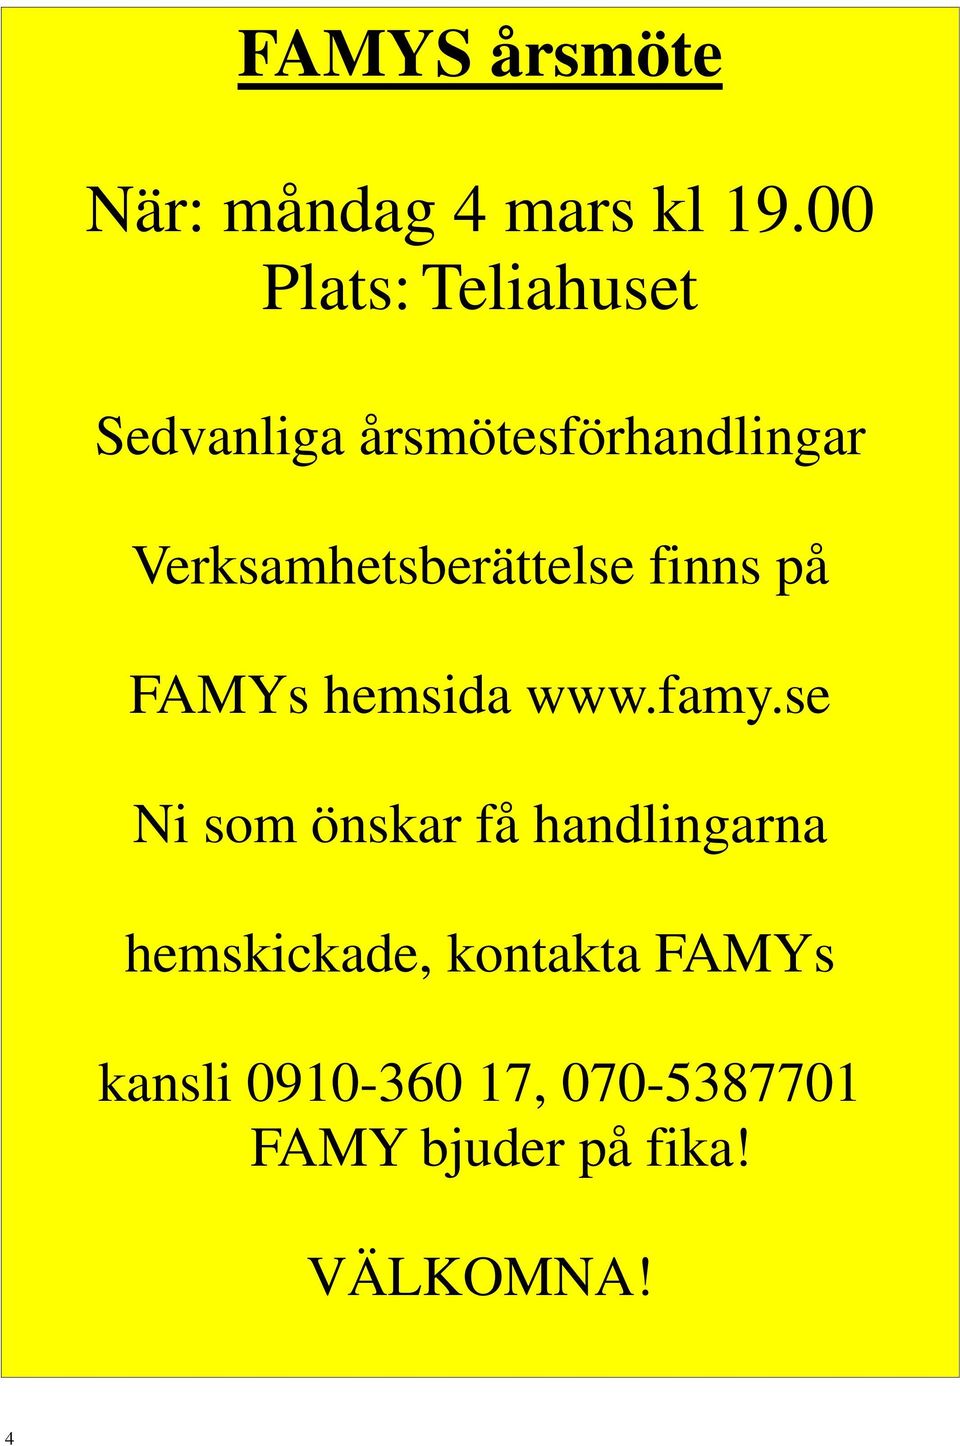 Verksamhetsberättelse finns på FAMYs hemsida www.famy.